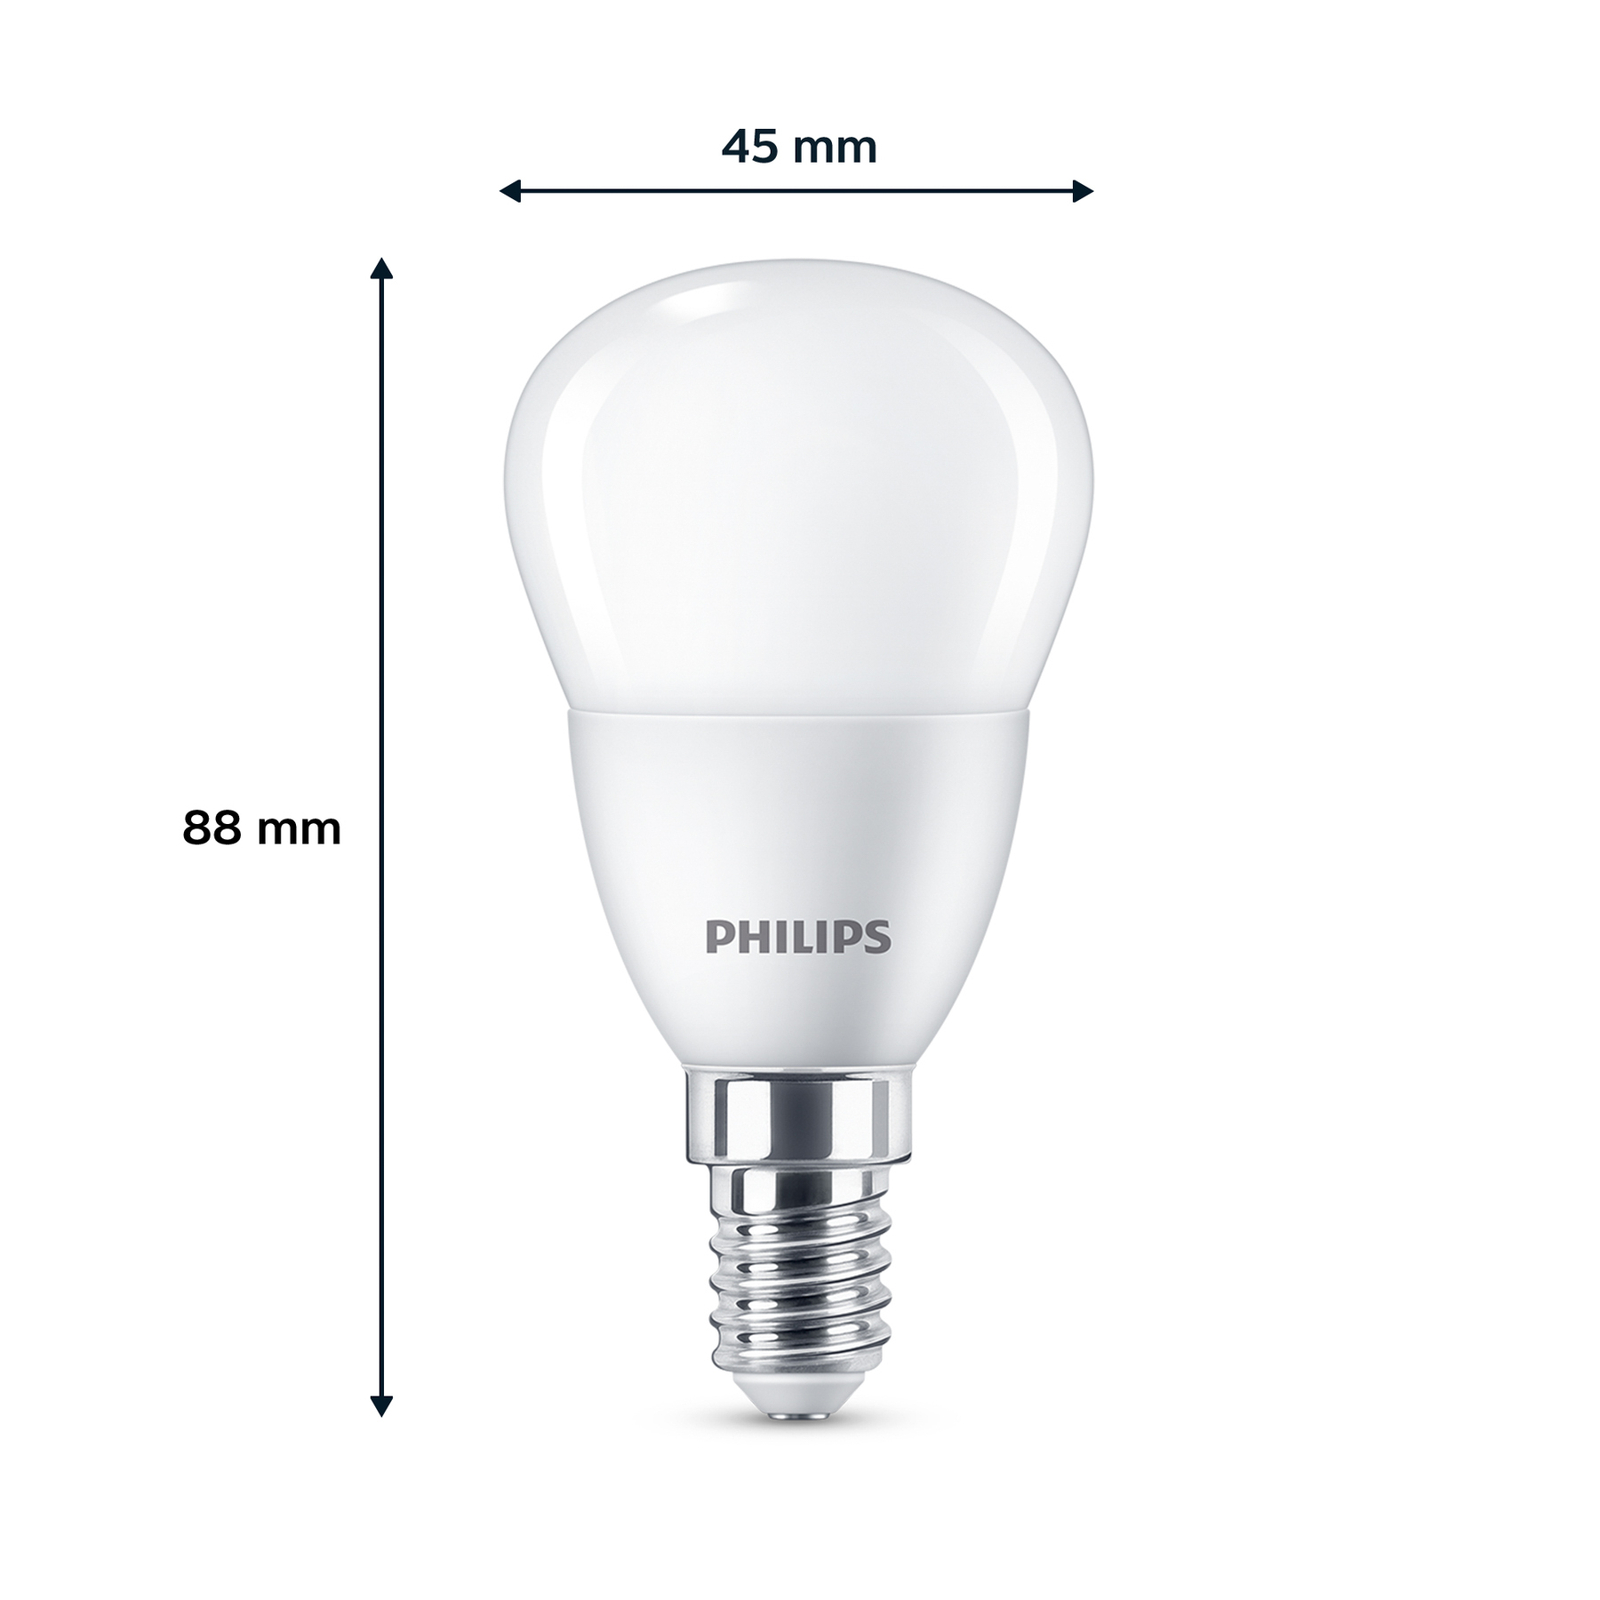 Philips LED žiarovka E14 4,9W 470m 2700K matná 3ks